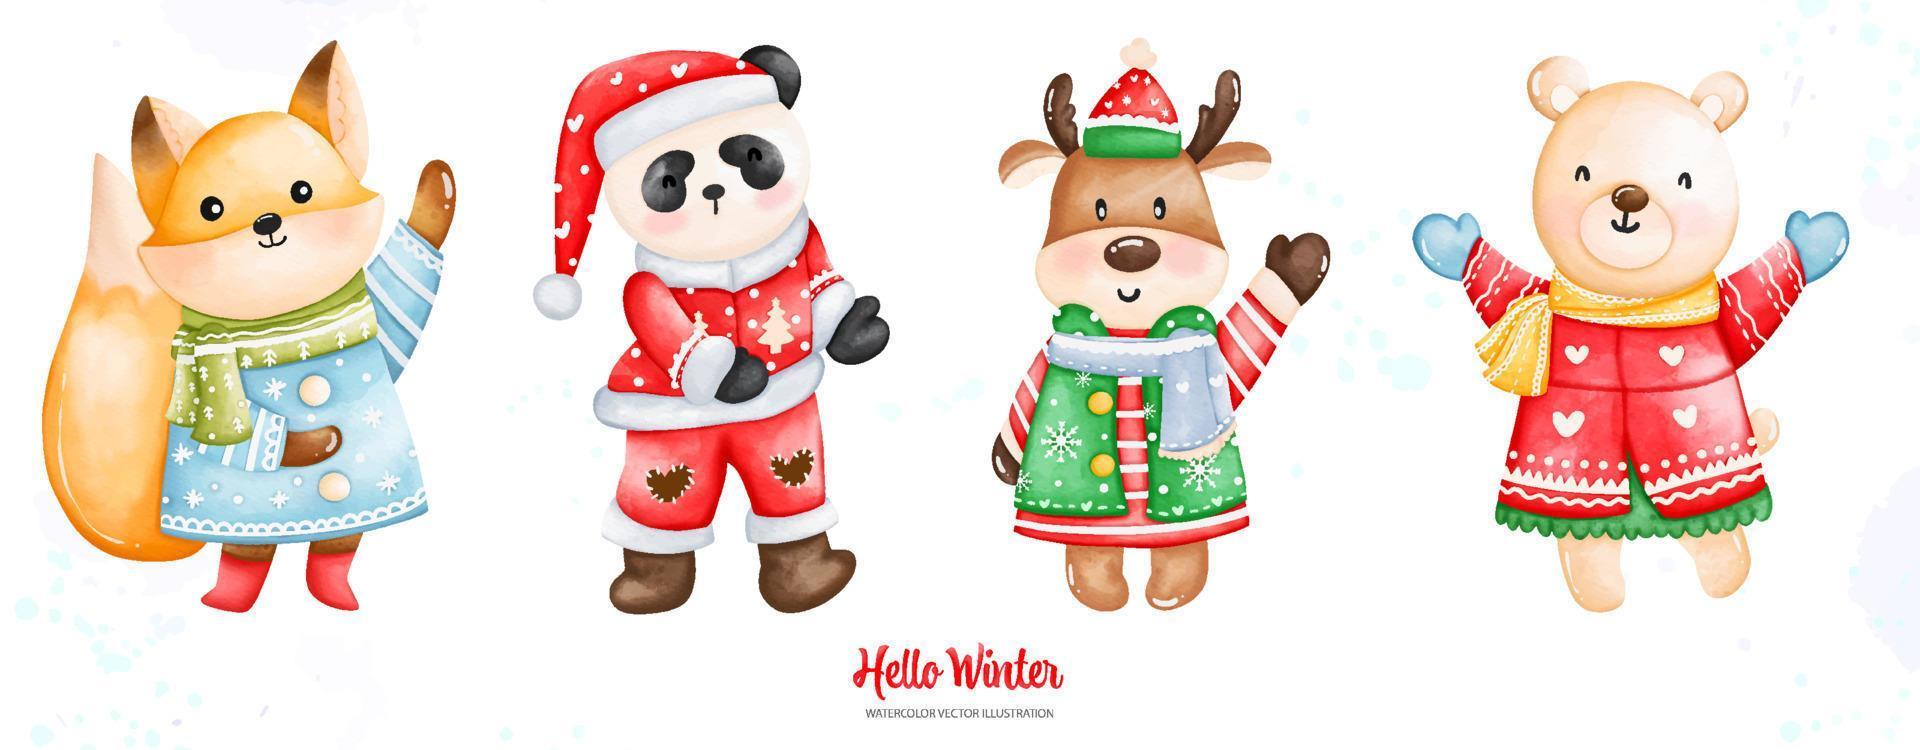 acuarela navidad y zorro de invierno, panda, ciervo, oso en ropa de invierno, ilustración acuarela vector